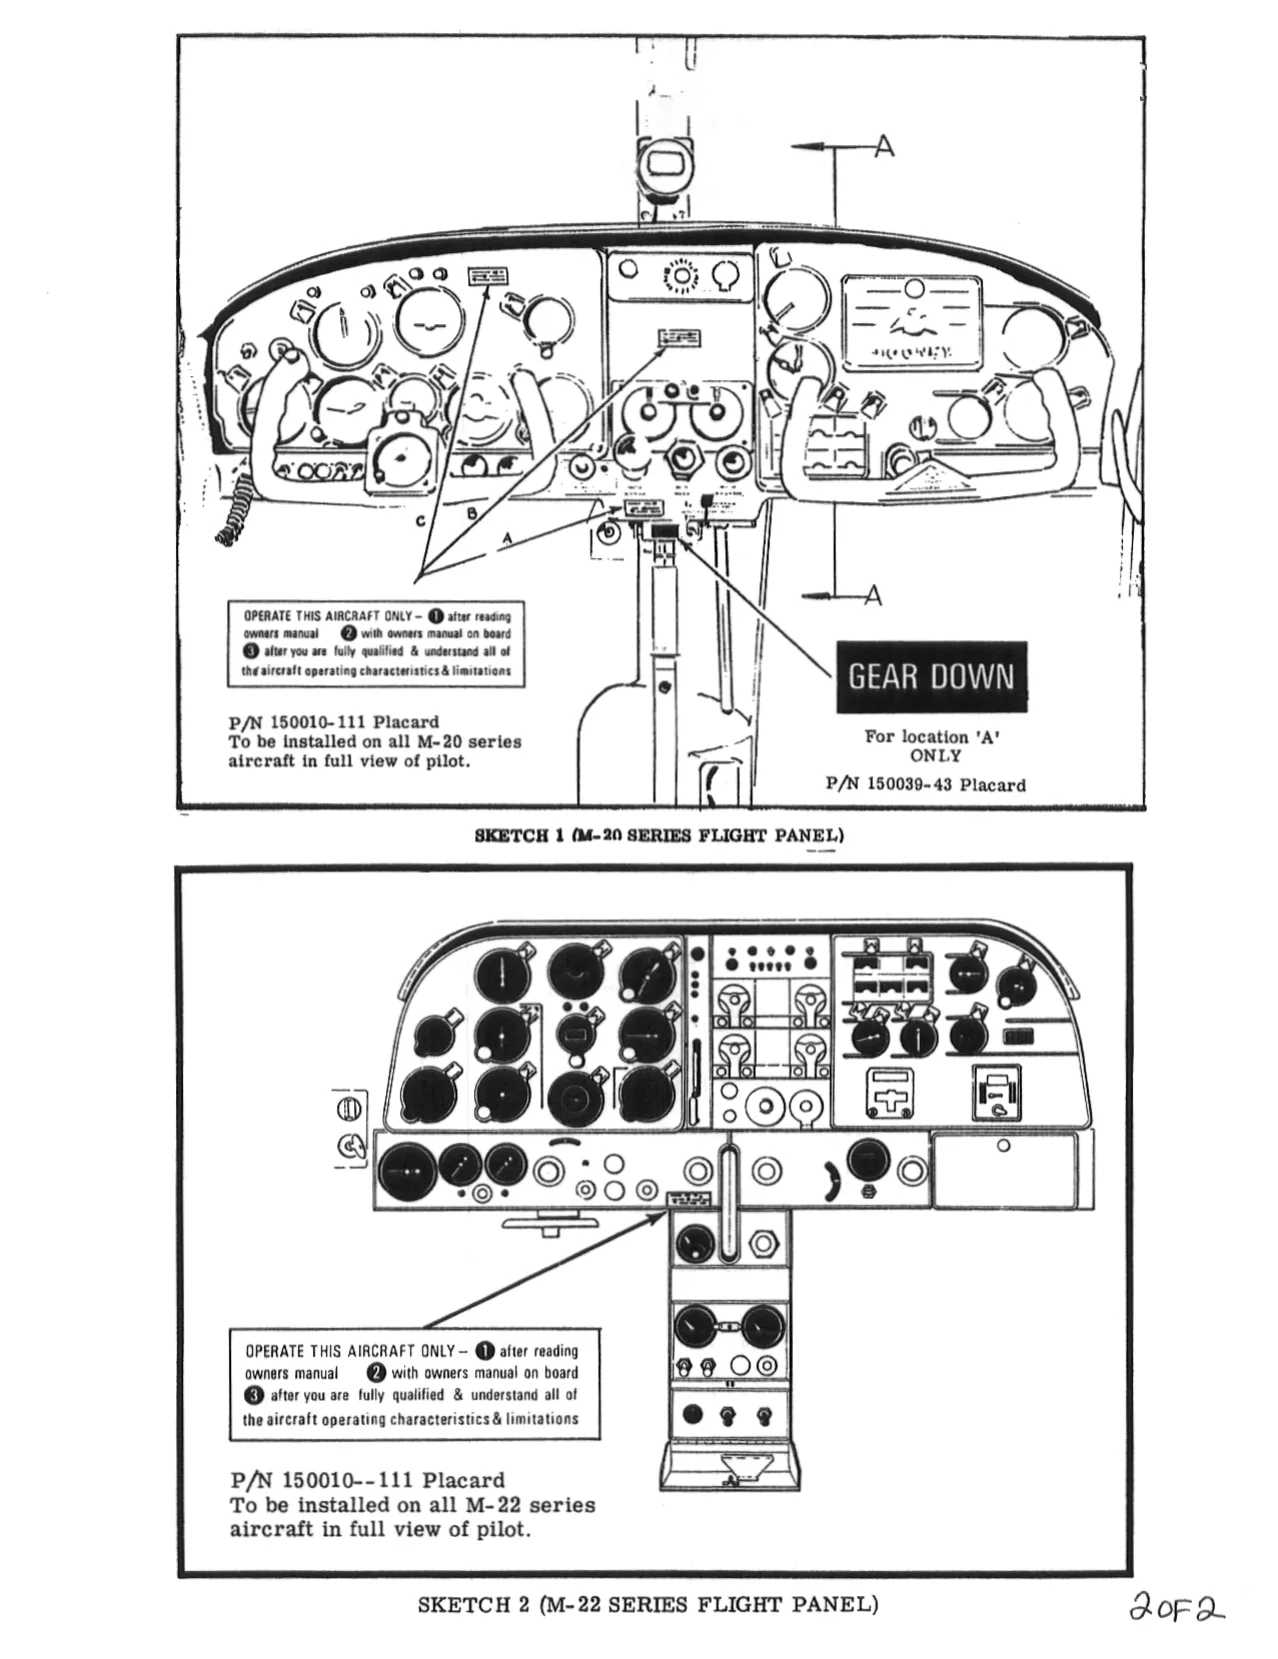 Mooney M20C aircraft repair, service manual Preview image 2